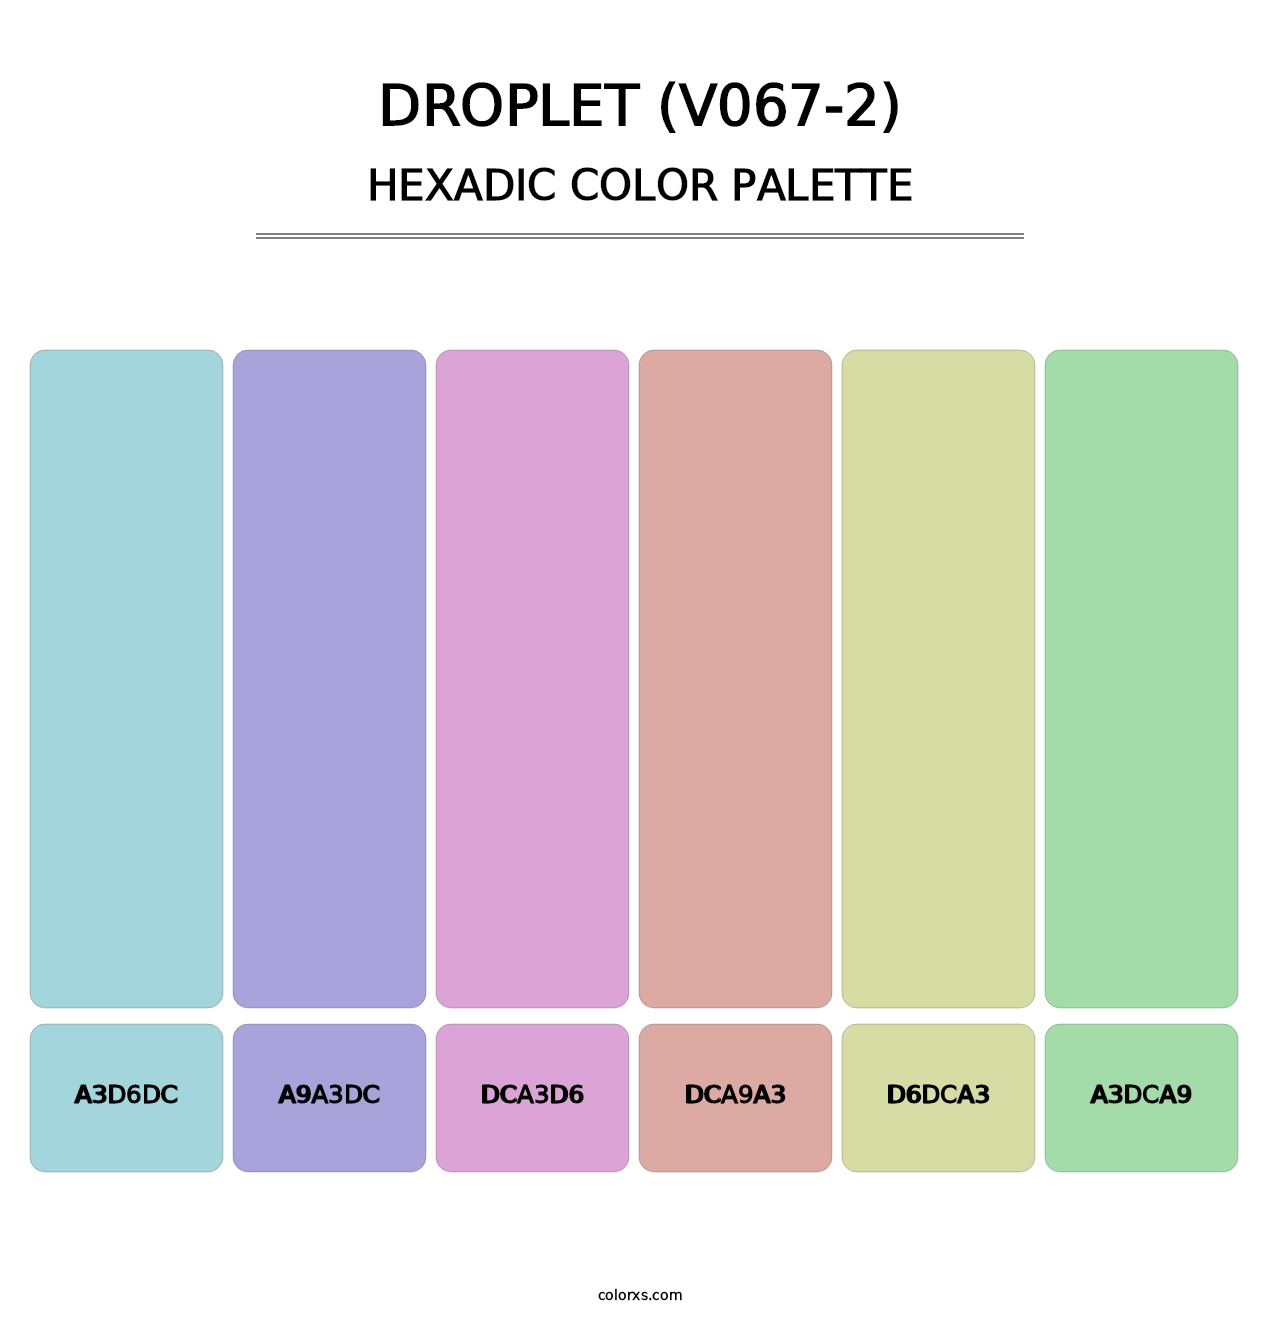 Droplet (V067-2) - Hexadic Color Palette